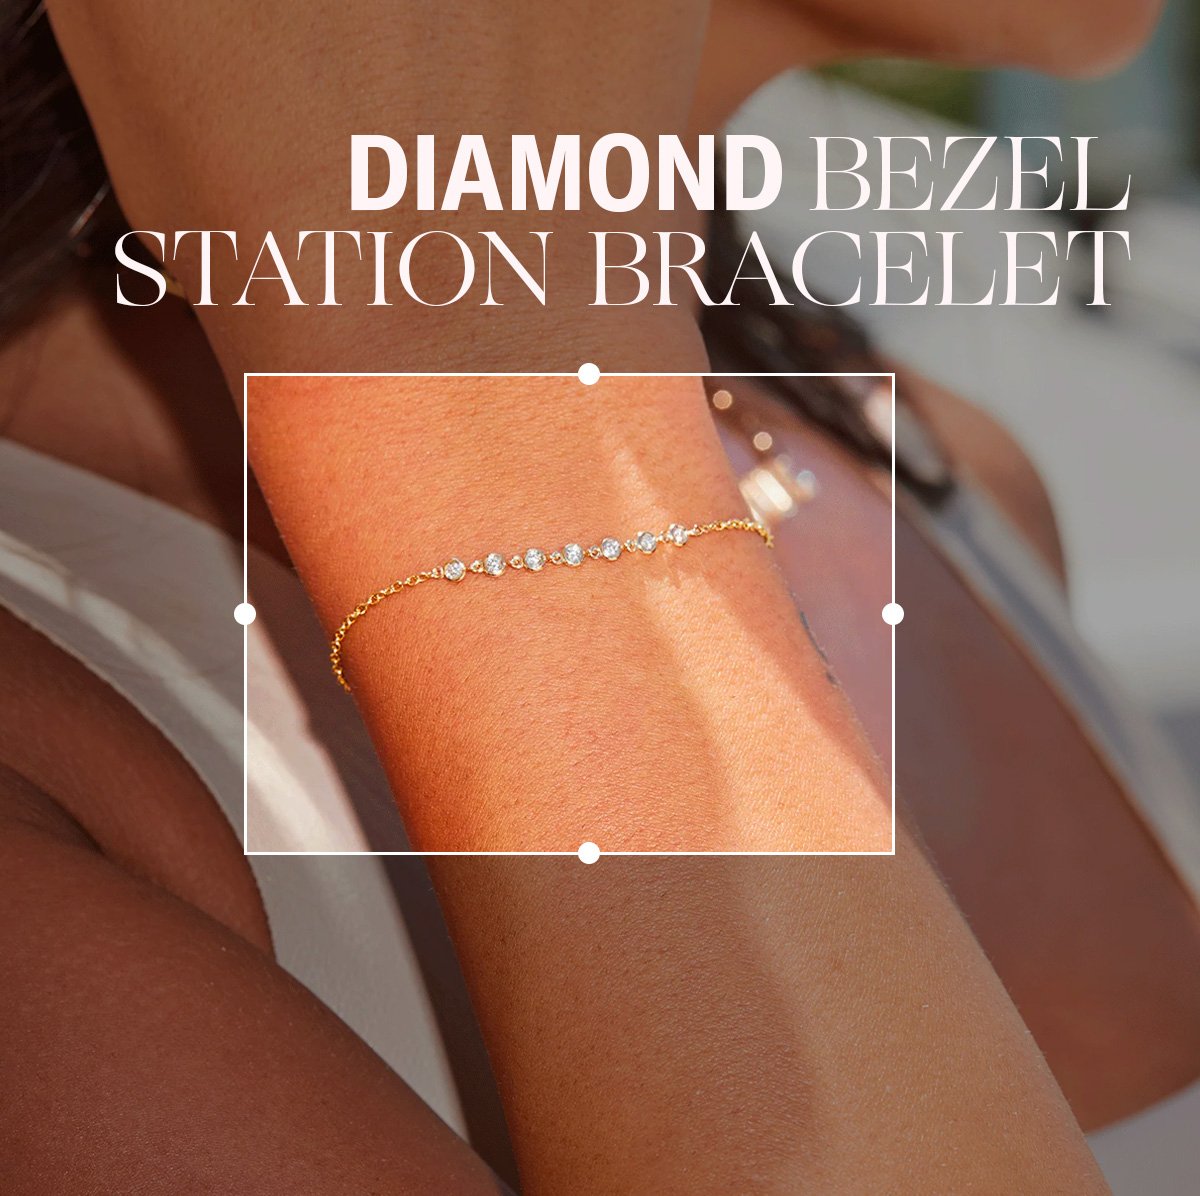 Diamond Bezel Station Bracelet